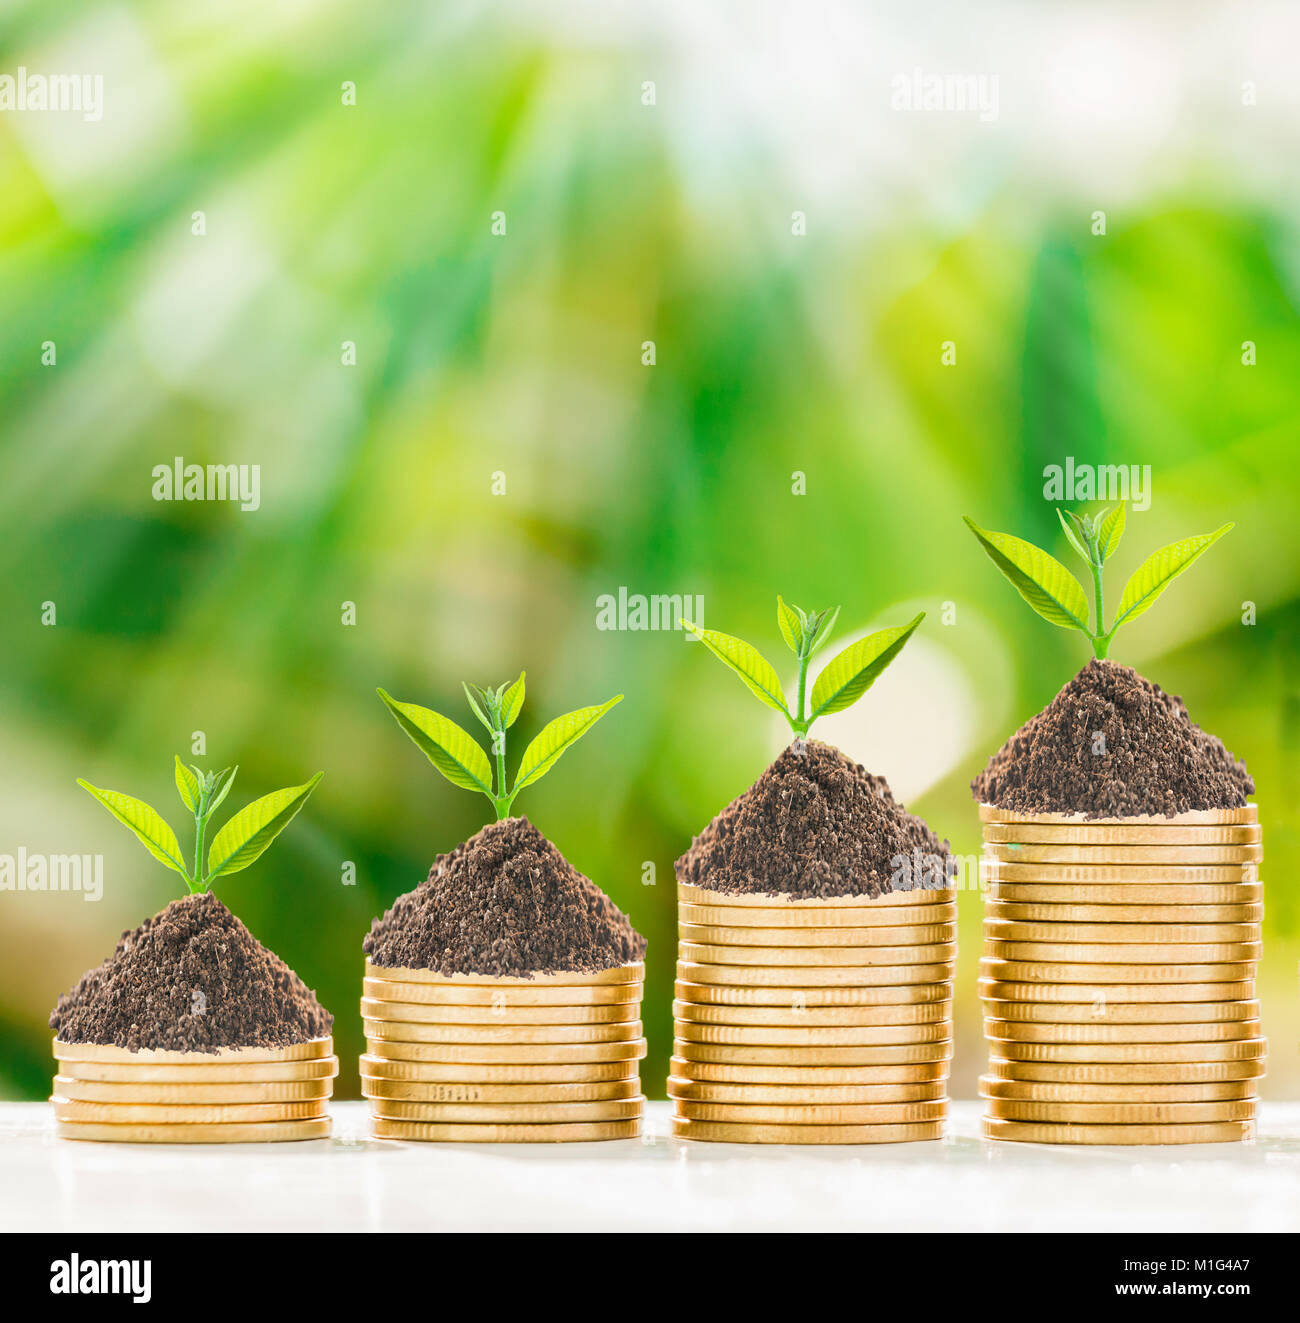 La croissance des arbres dans des pièces d'or avec de la nature, concept d'entreprise. Banque D'Images